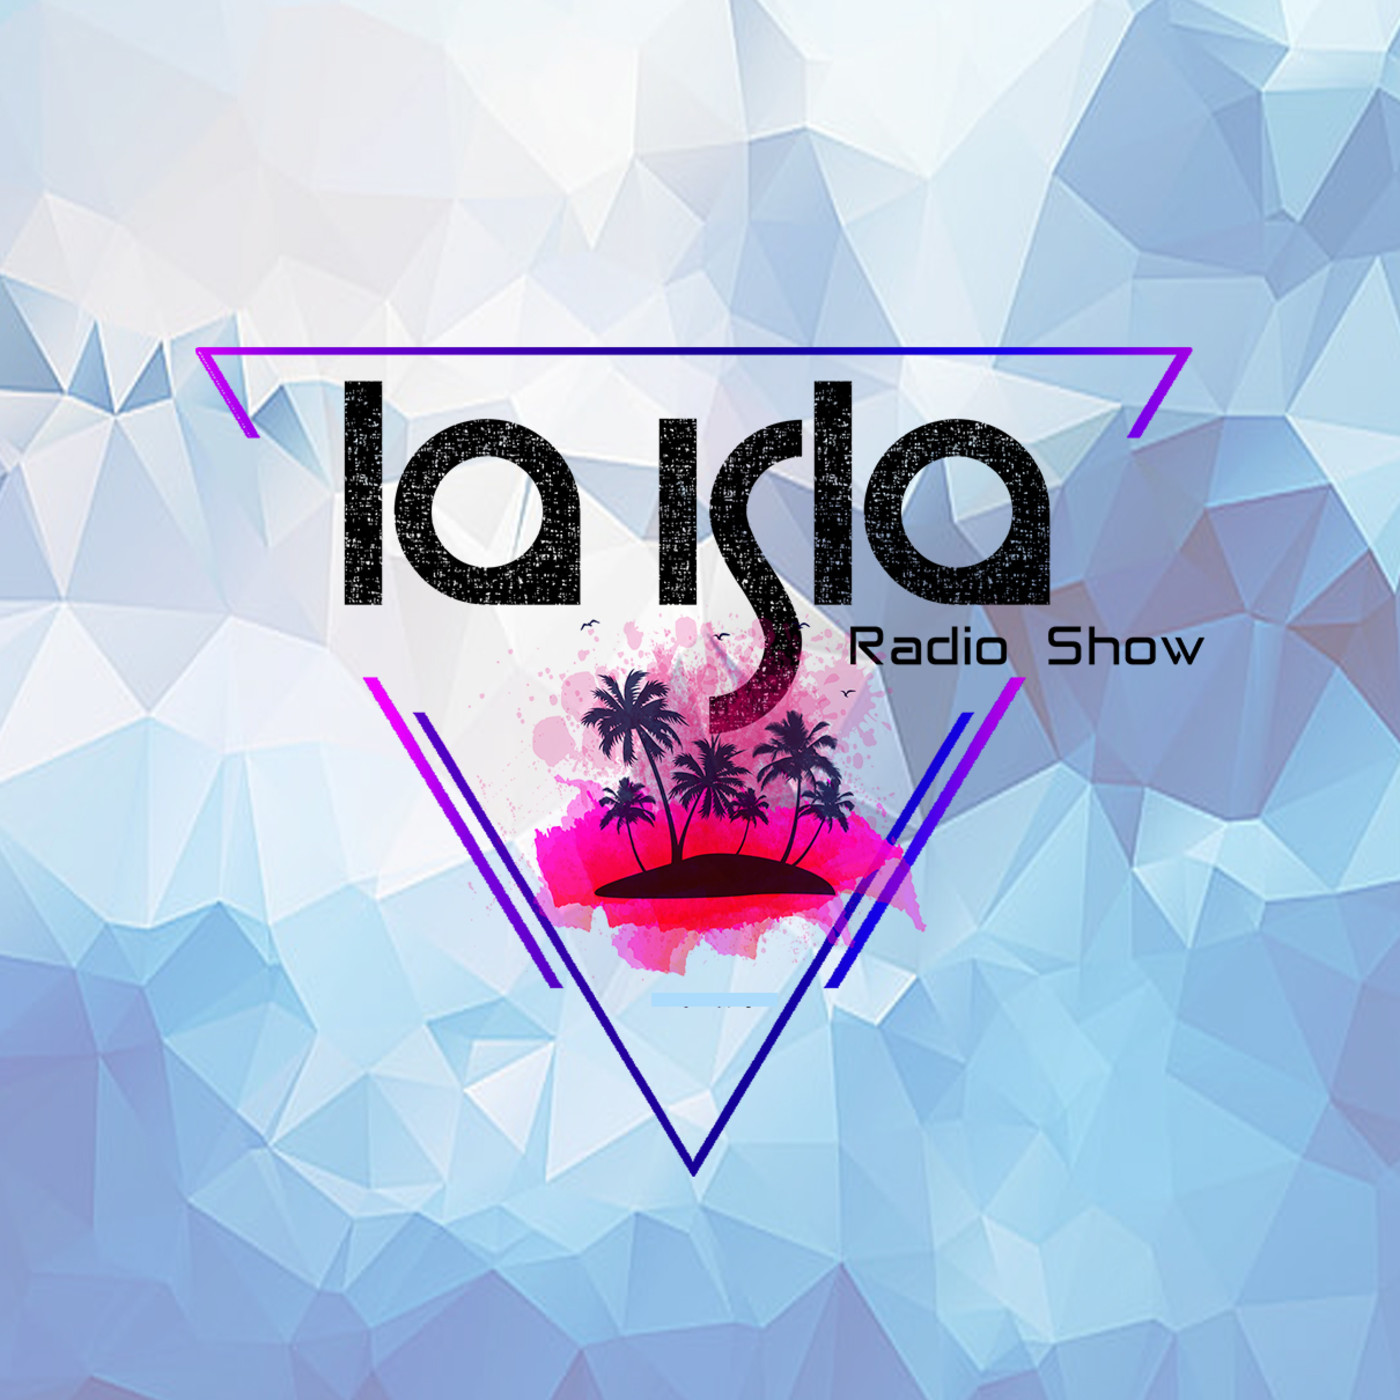 La Isla Radio Show #69 - 23/07/21 / ALBA DM